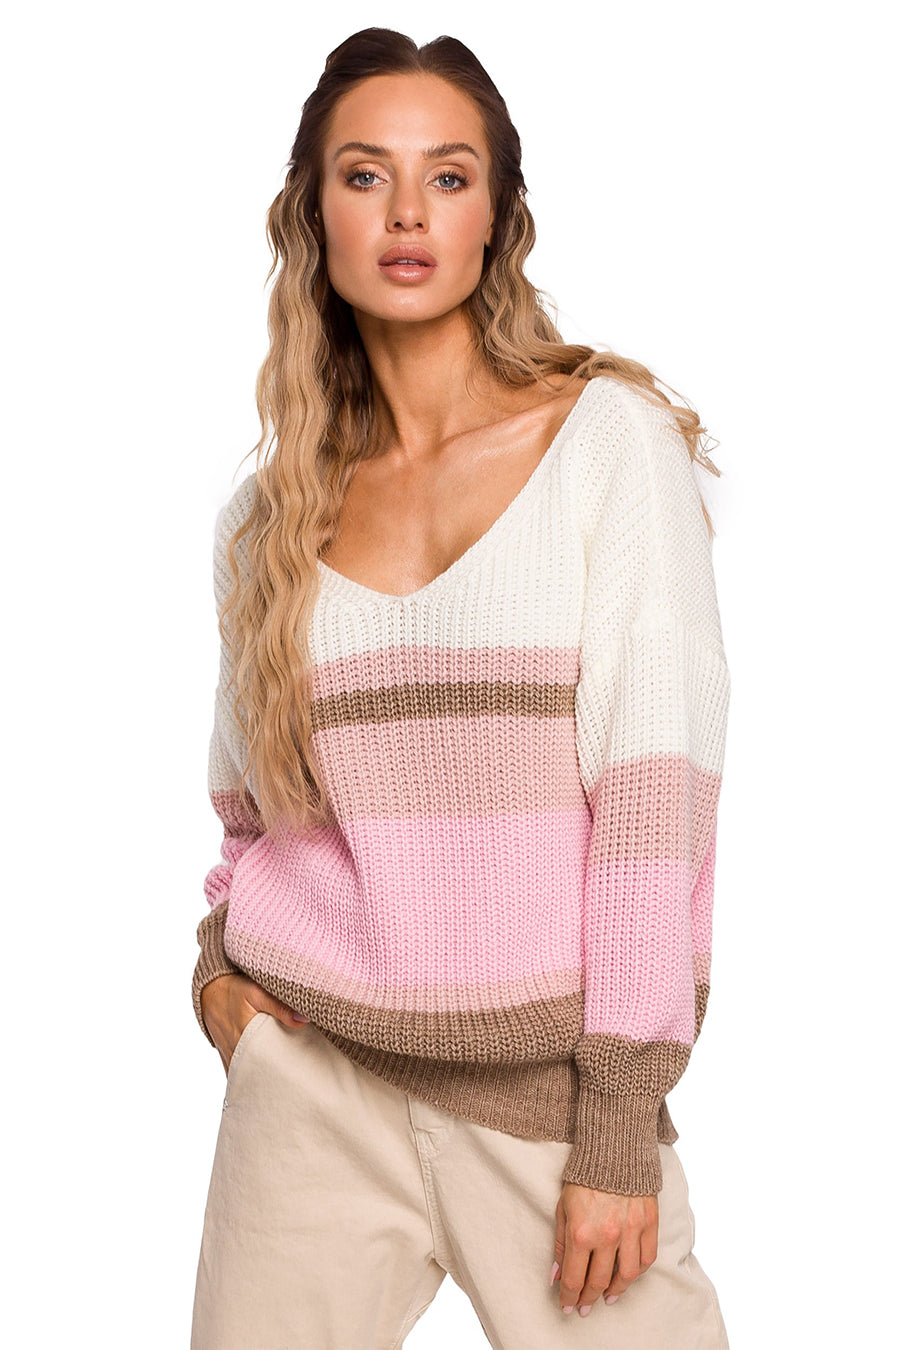 Γυναικείο πουλόβερ Aithne, Λευκό/Ροζ 3